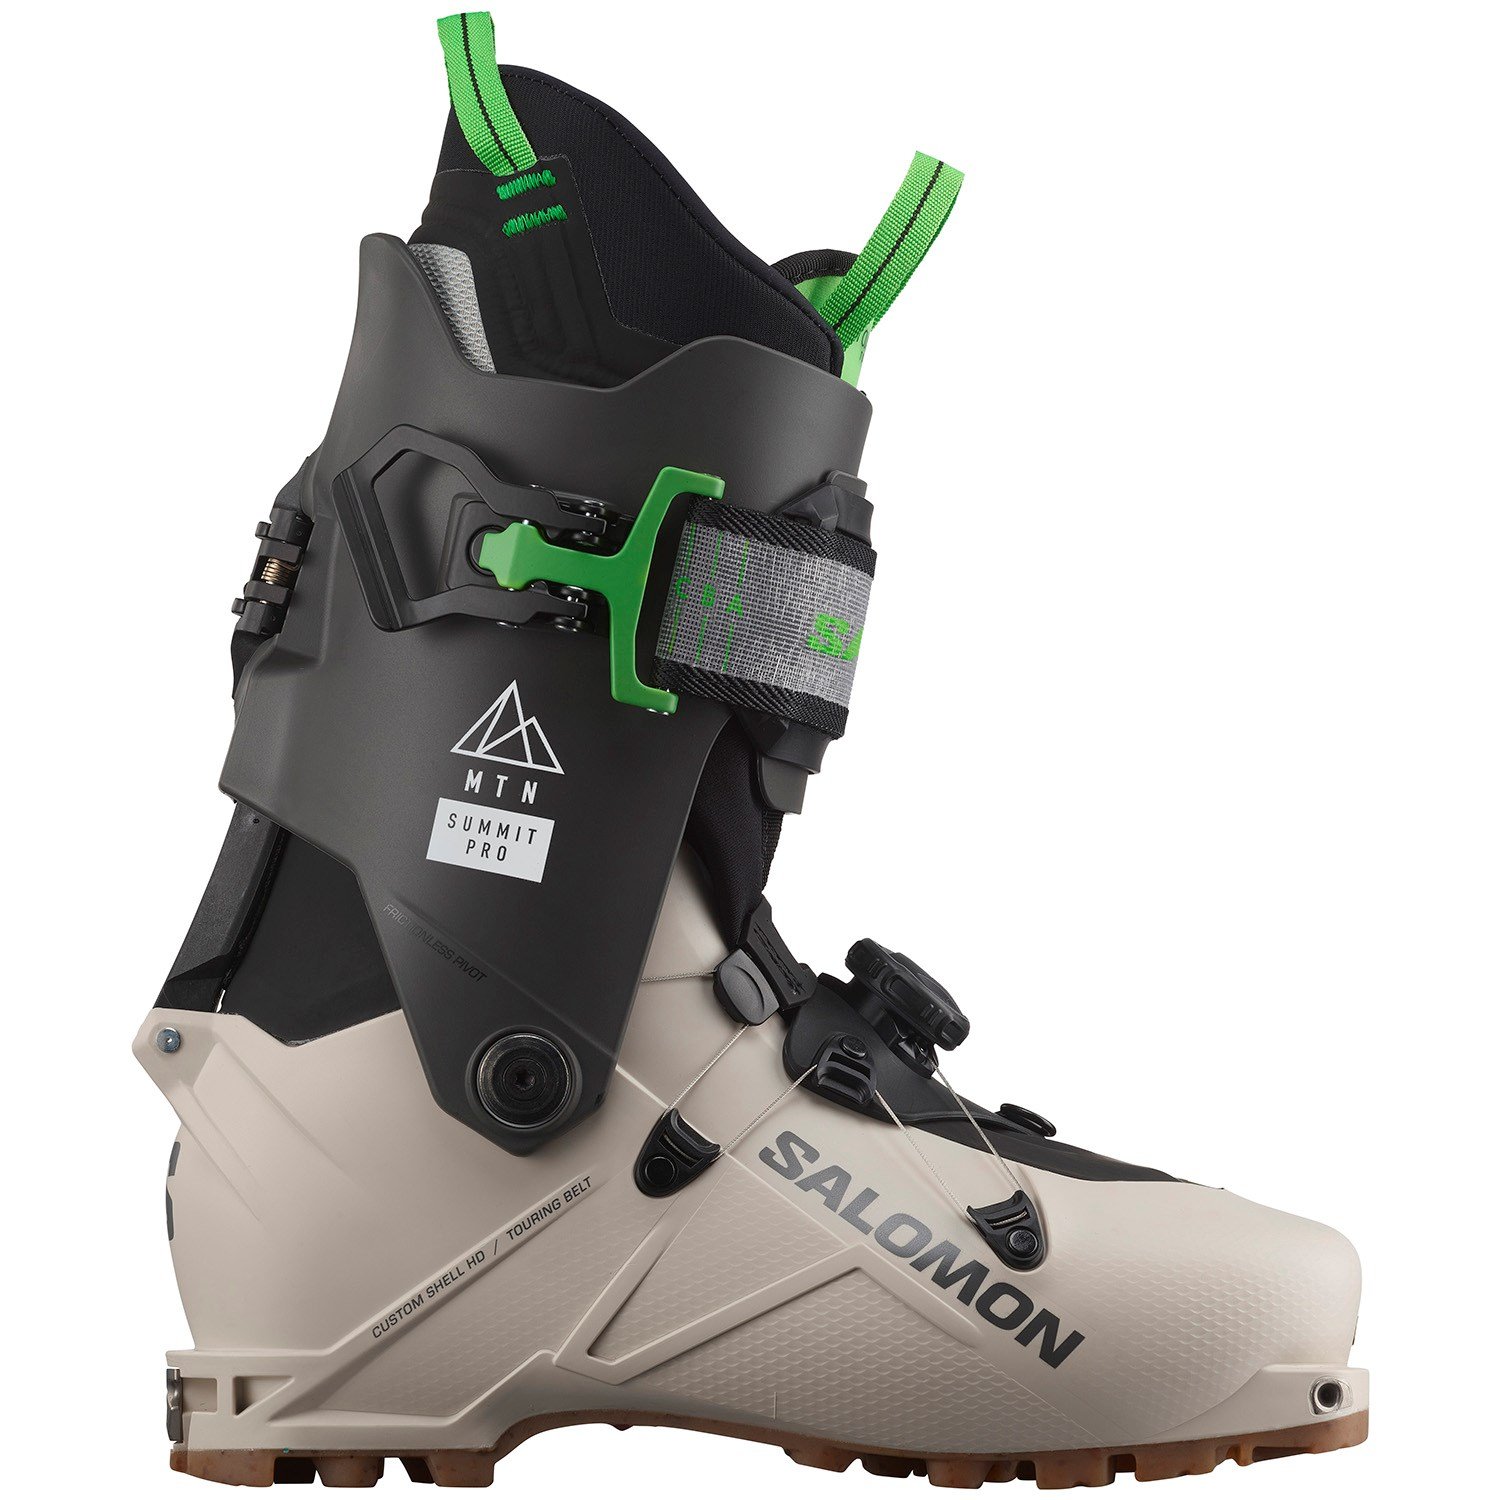 Salomon MTN Summit Pro Alpine Touring Ski Boots